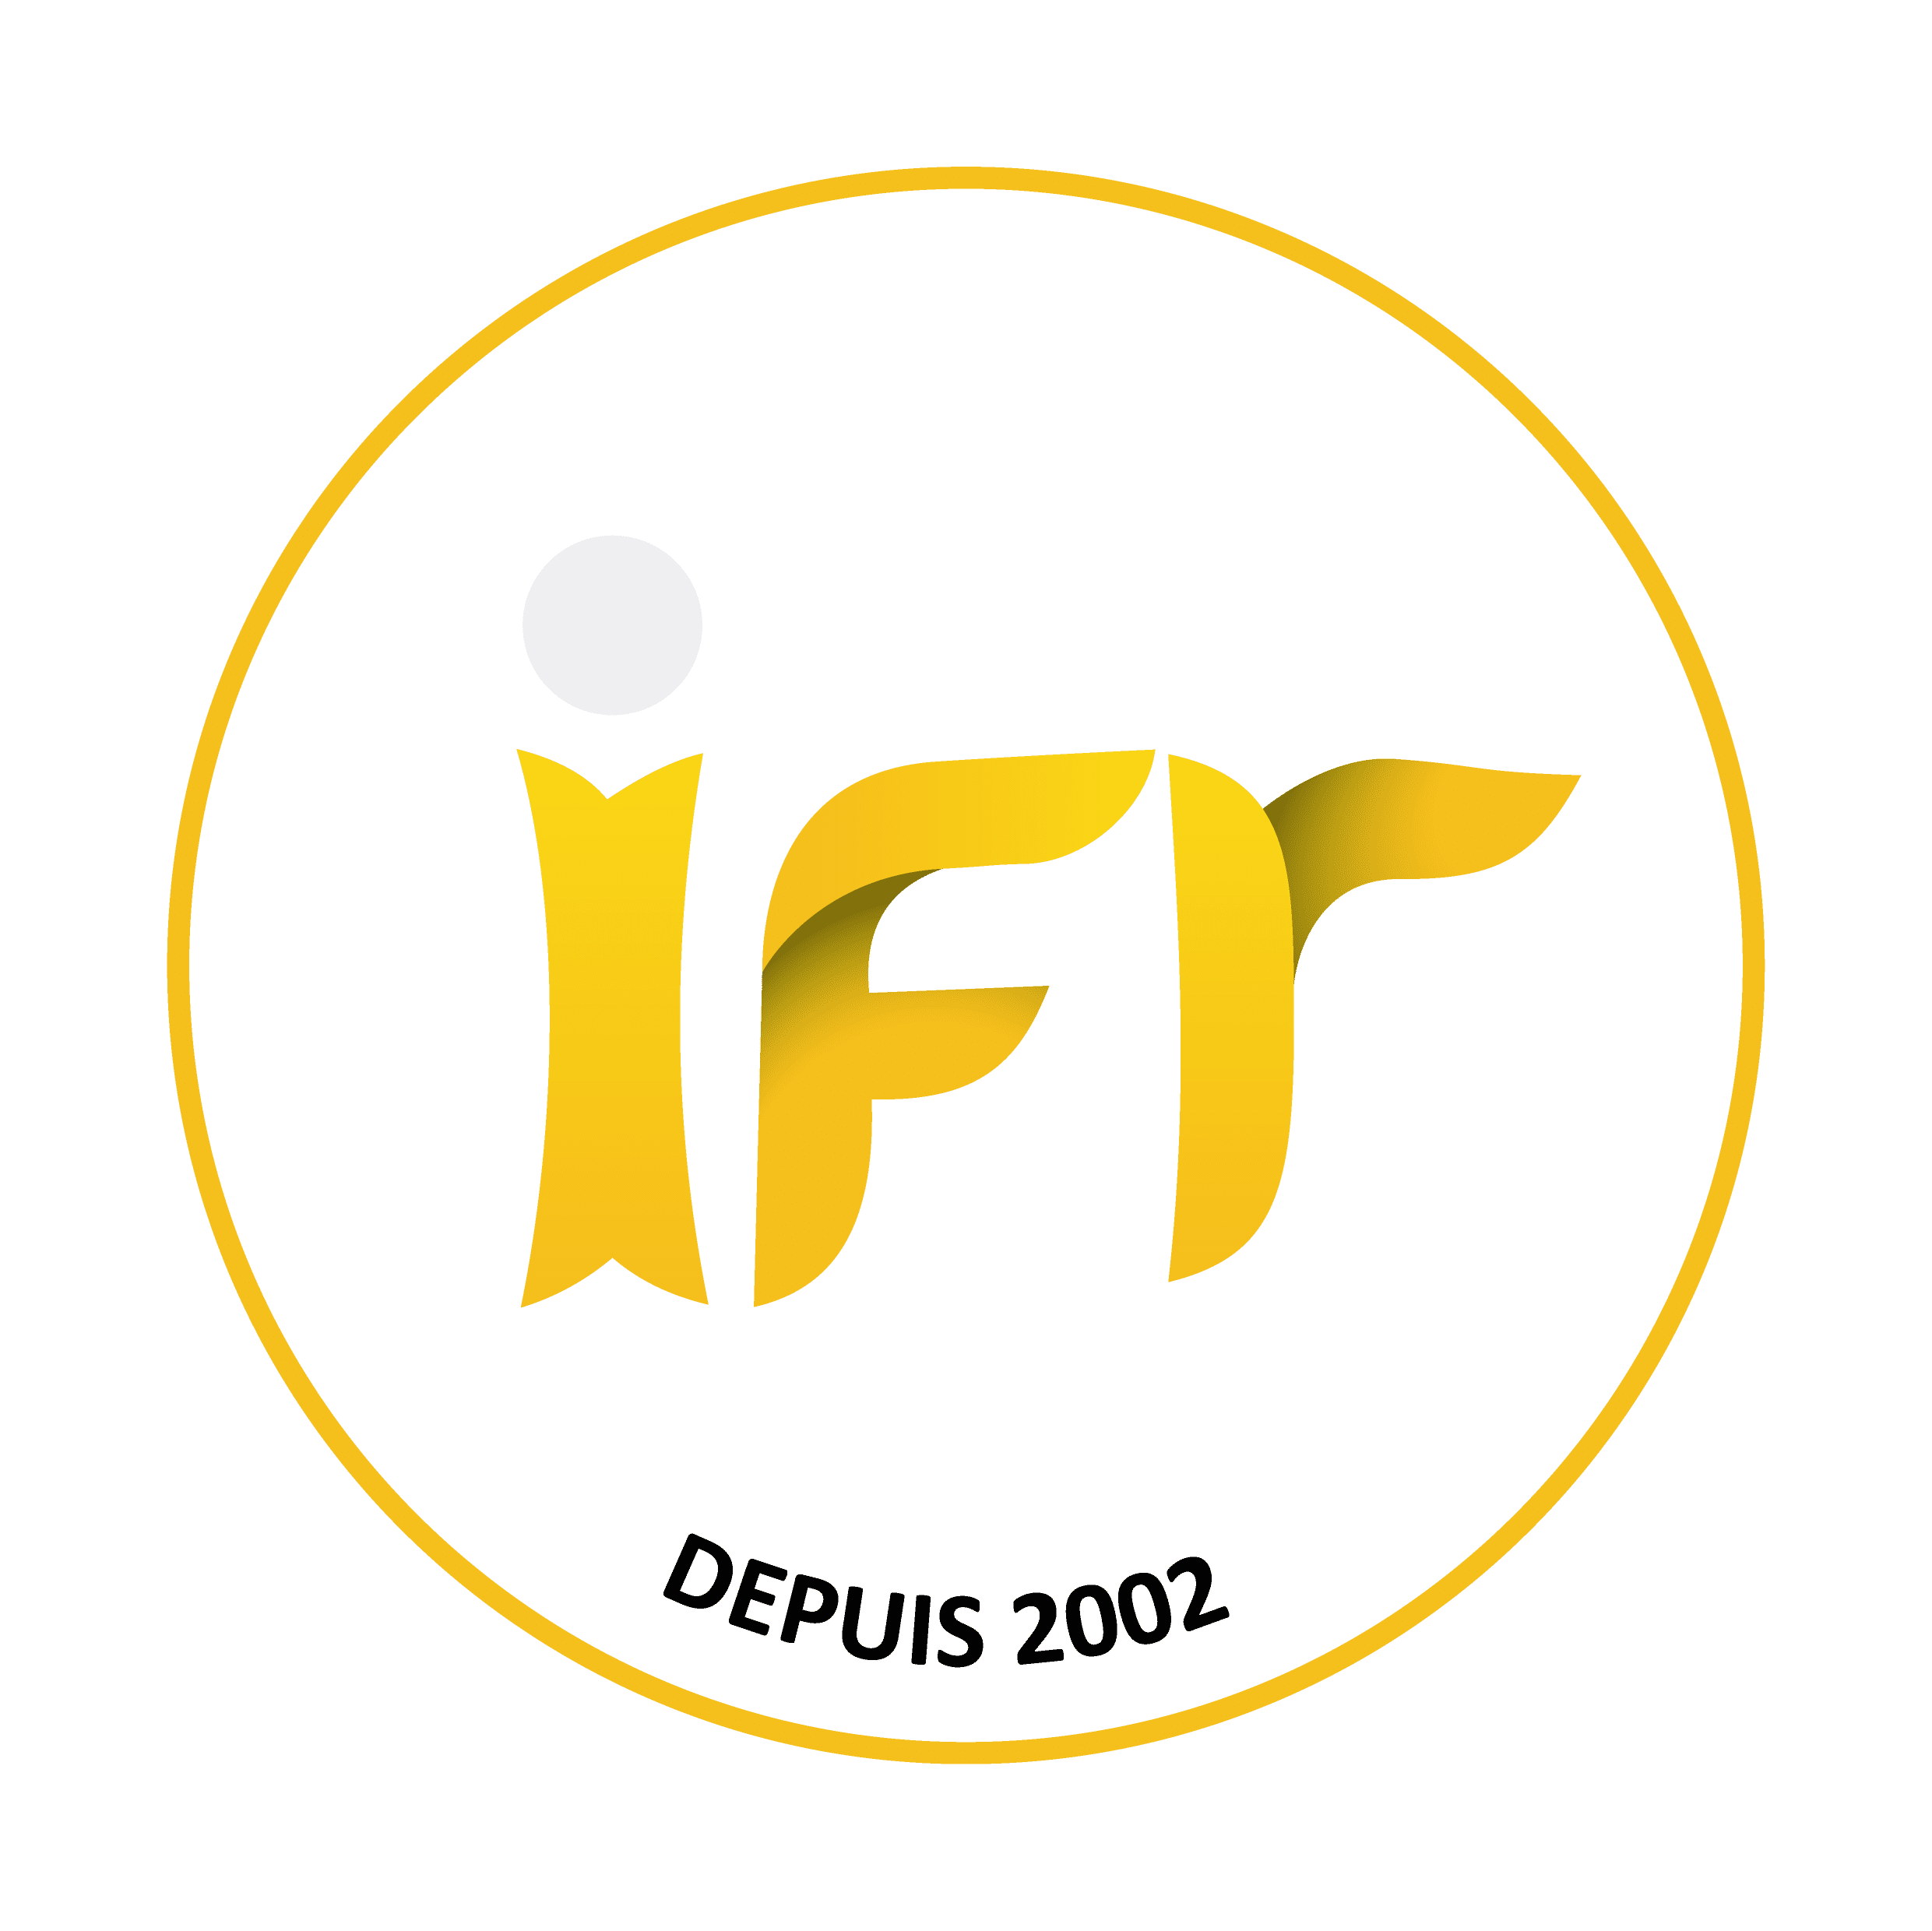 IFR - Institut de Formation de la Réunion